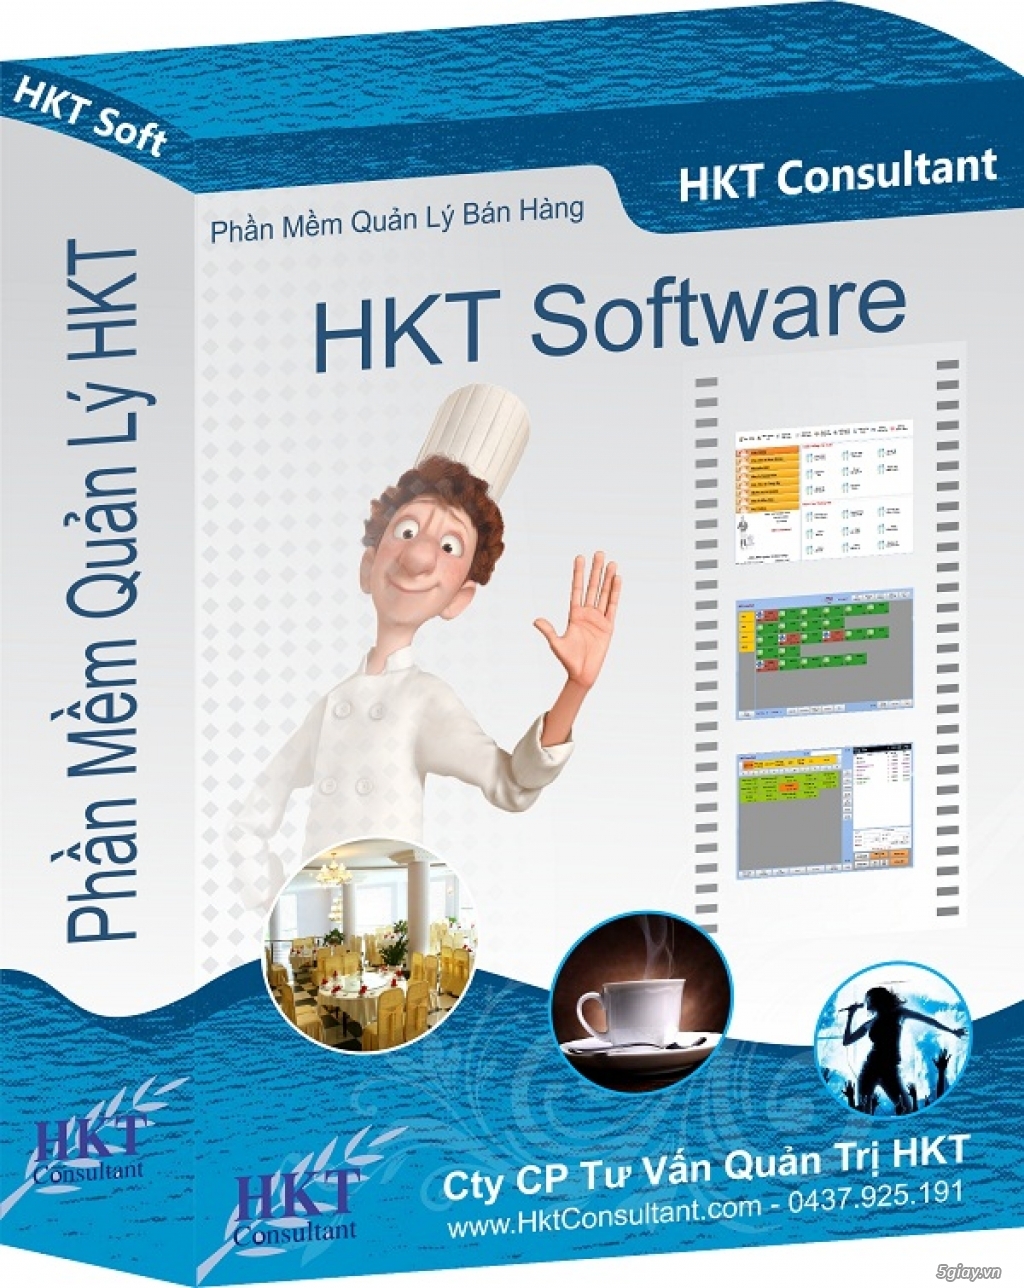 Phần mềm quản lý bán hàng HKT - 1